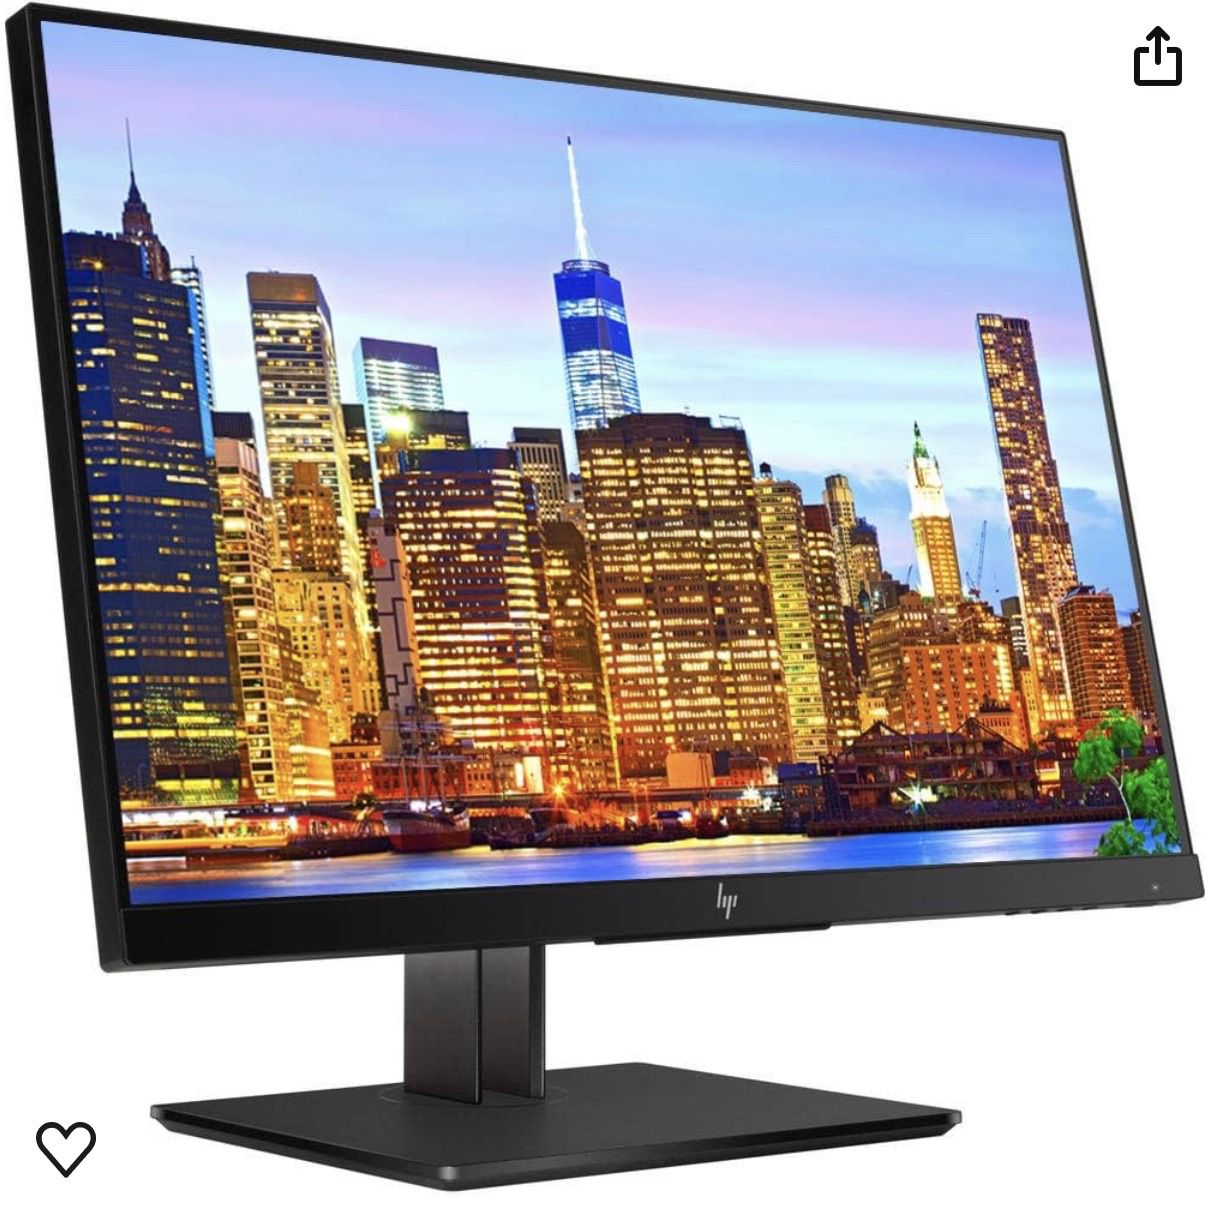 HP 24” Display/monitor, New